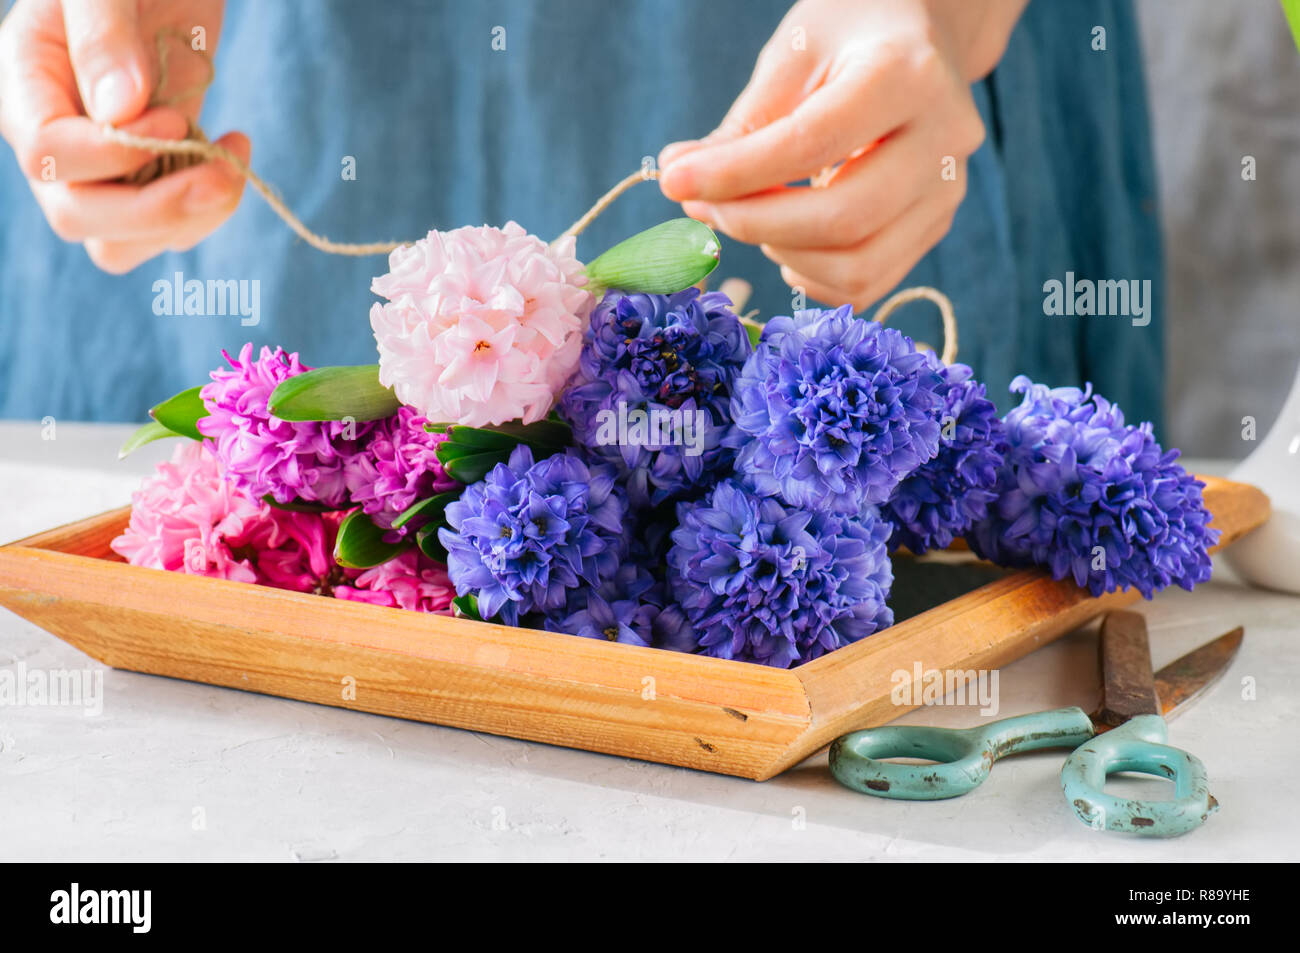 Frau tieing Blumenstrauß aus Hyazinthen Blumen. Life style Foto. Kopieren Sie Platz. Im skandinavischen Stil. Stockfoto